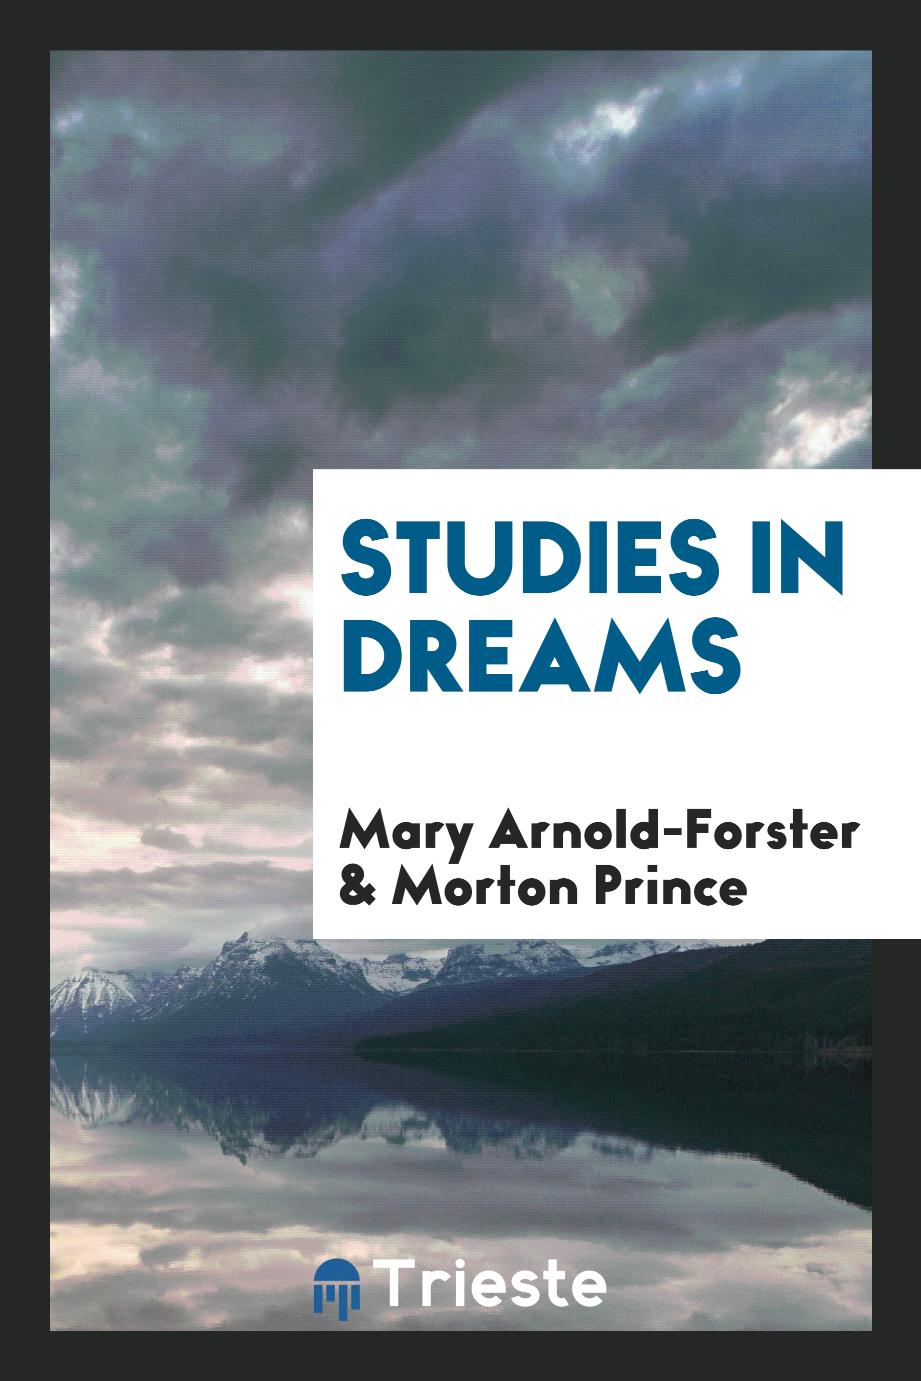 Studies in dreams